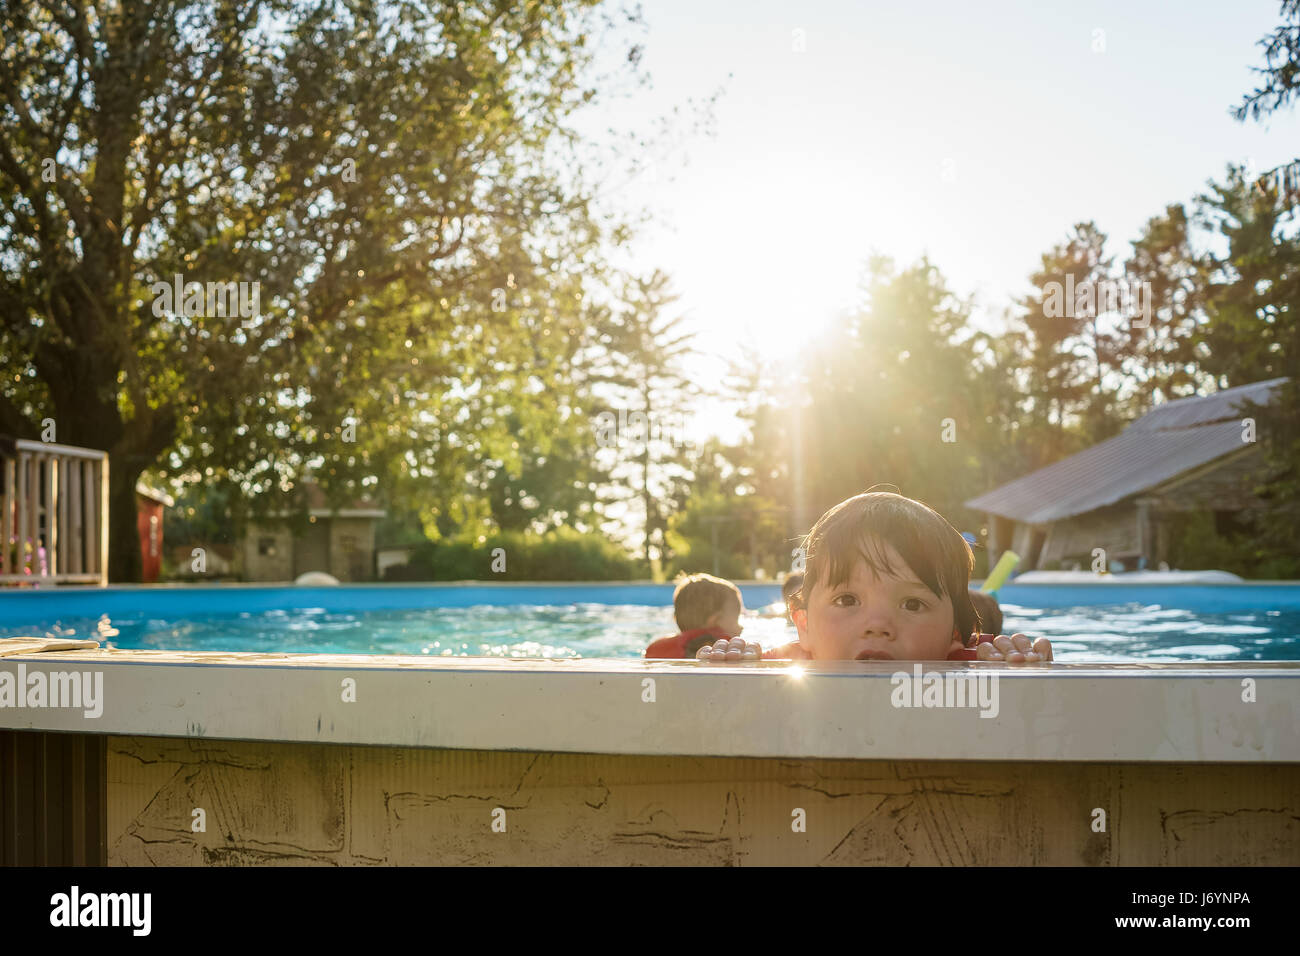 Chico mirando sobre el borde de una piscina con sus hermanos en el fondo Foto de stock